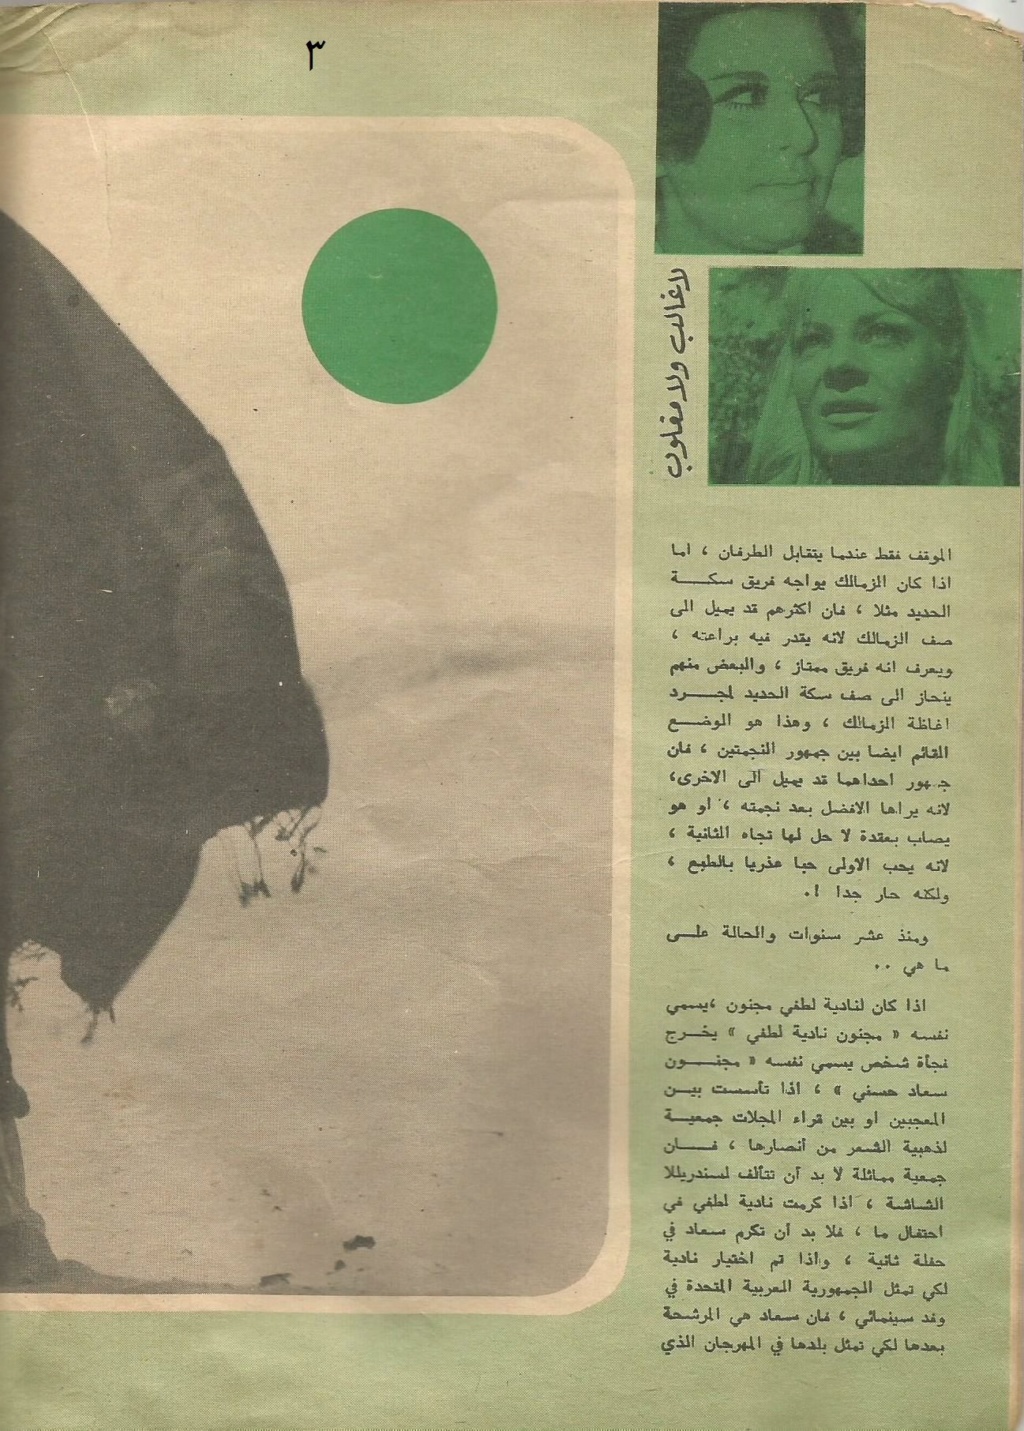 1971 - مقال صحفي : لاغالب ولا مغلوب في مباراة العشر سنوات بين سعاد حسني ونادية لطفي 1971 م 3146